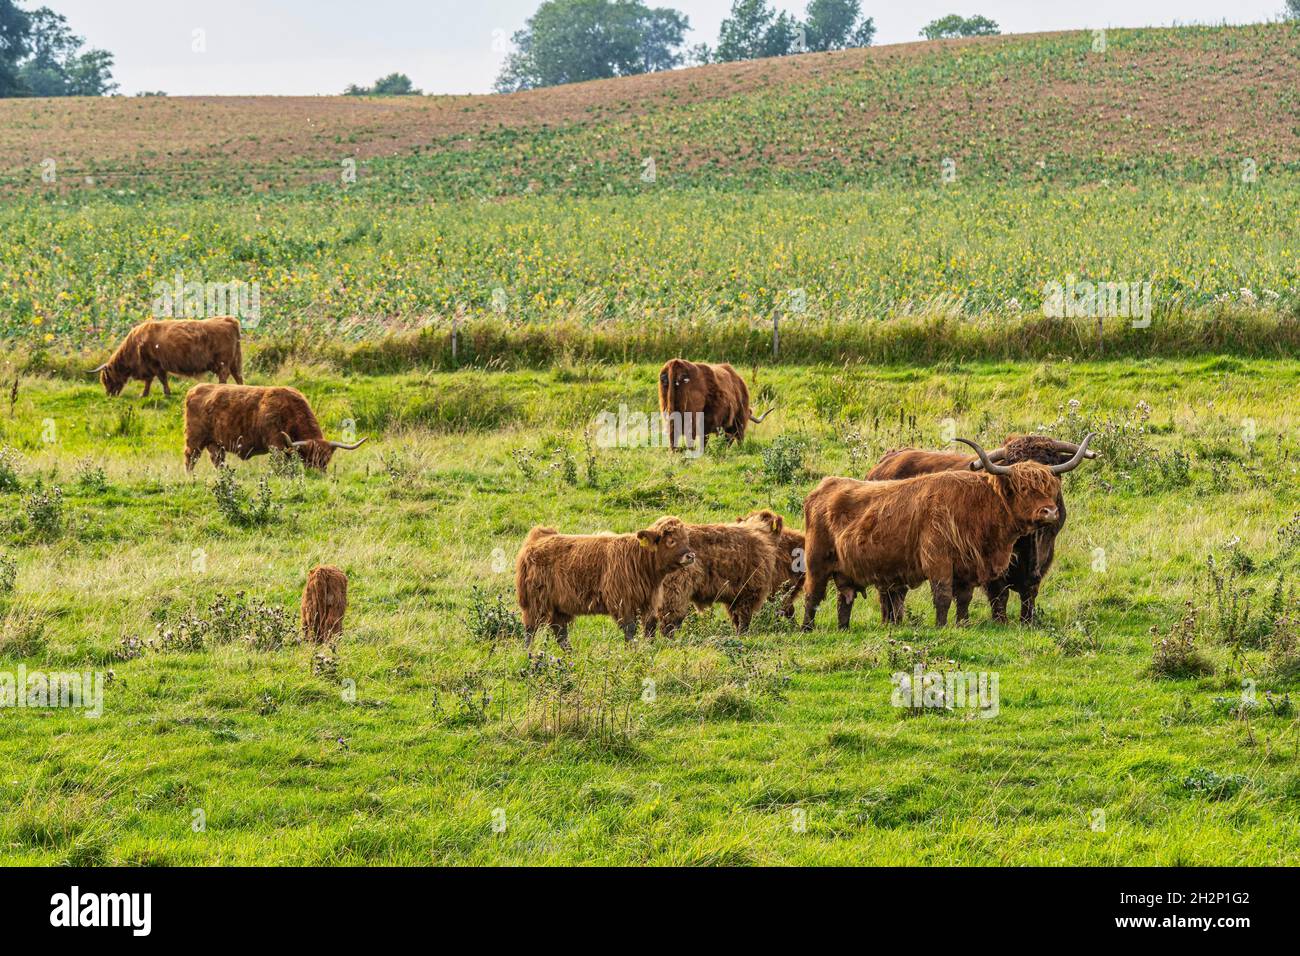 Rebaño de vacas Highlander, una raza de ganado originaria de Escocia, pastoreo. Dinamarca, Europa Foto de stock